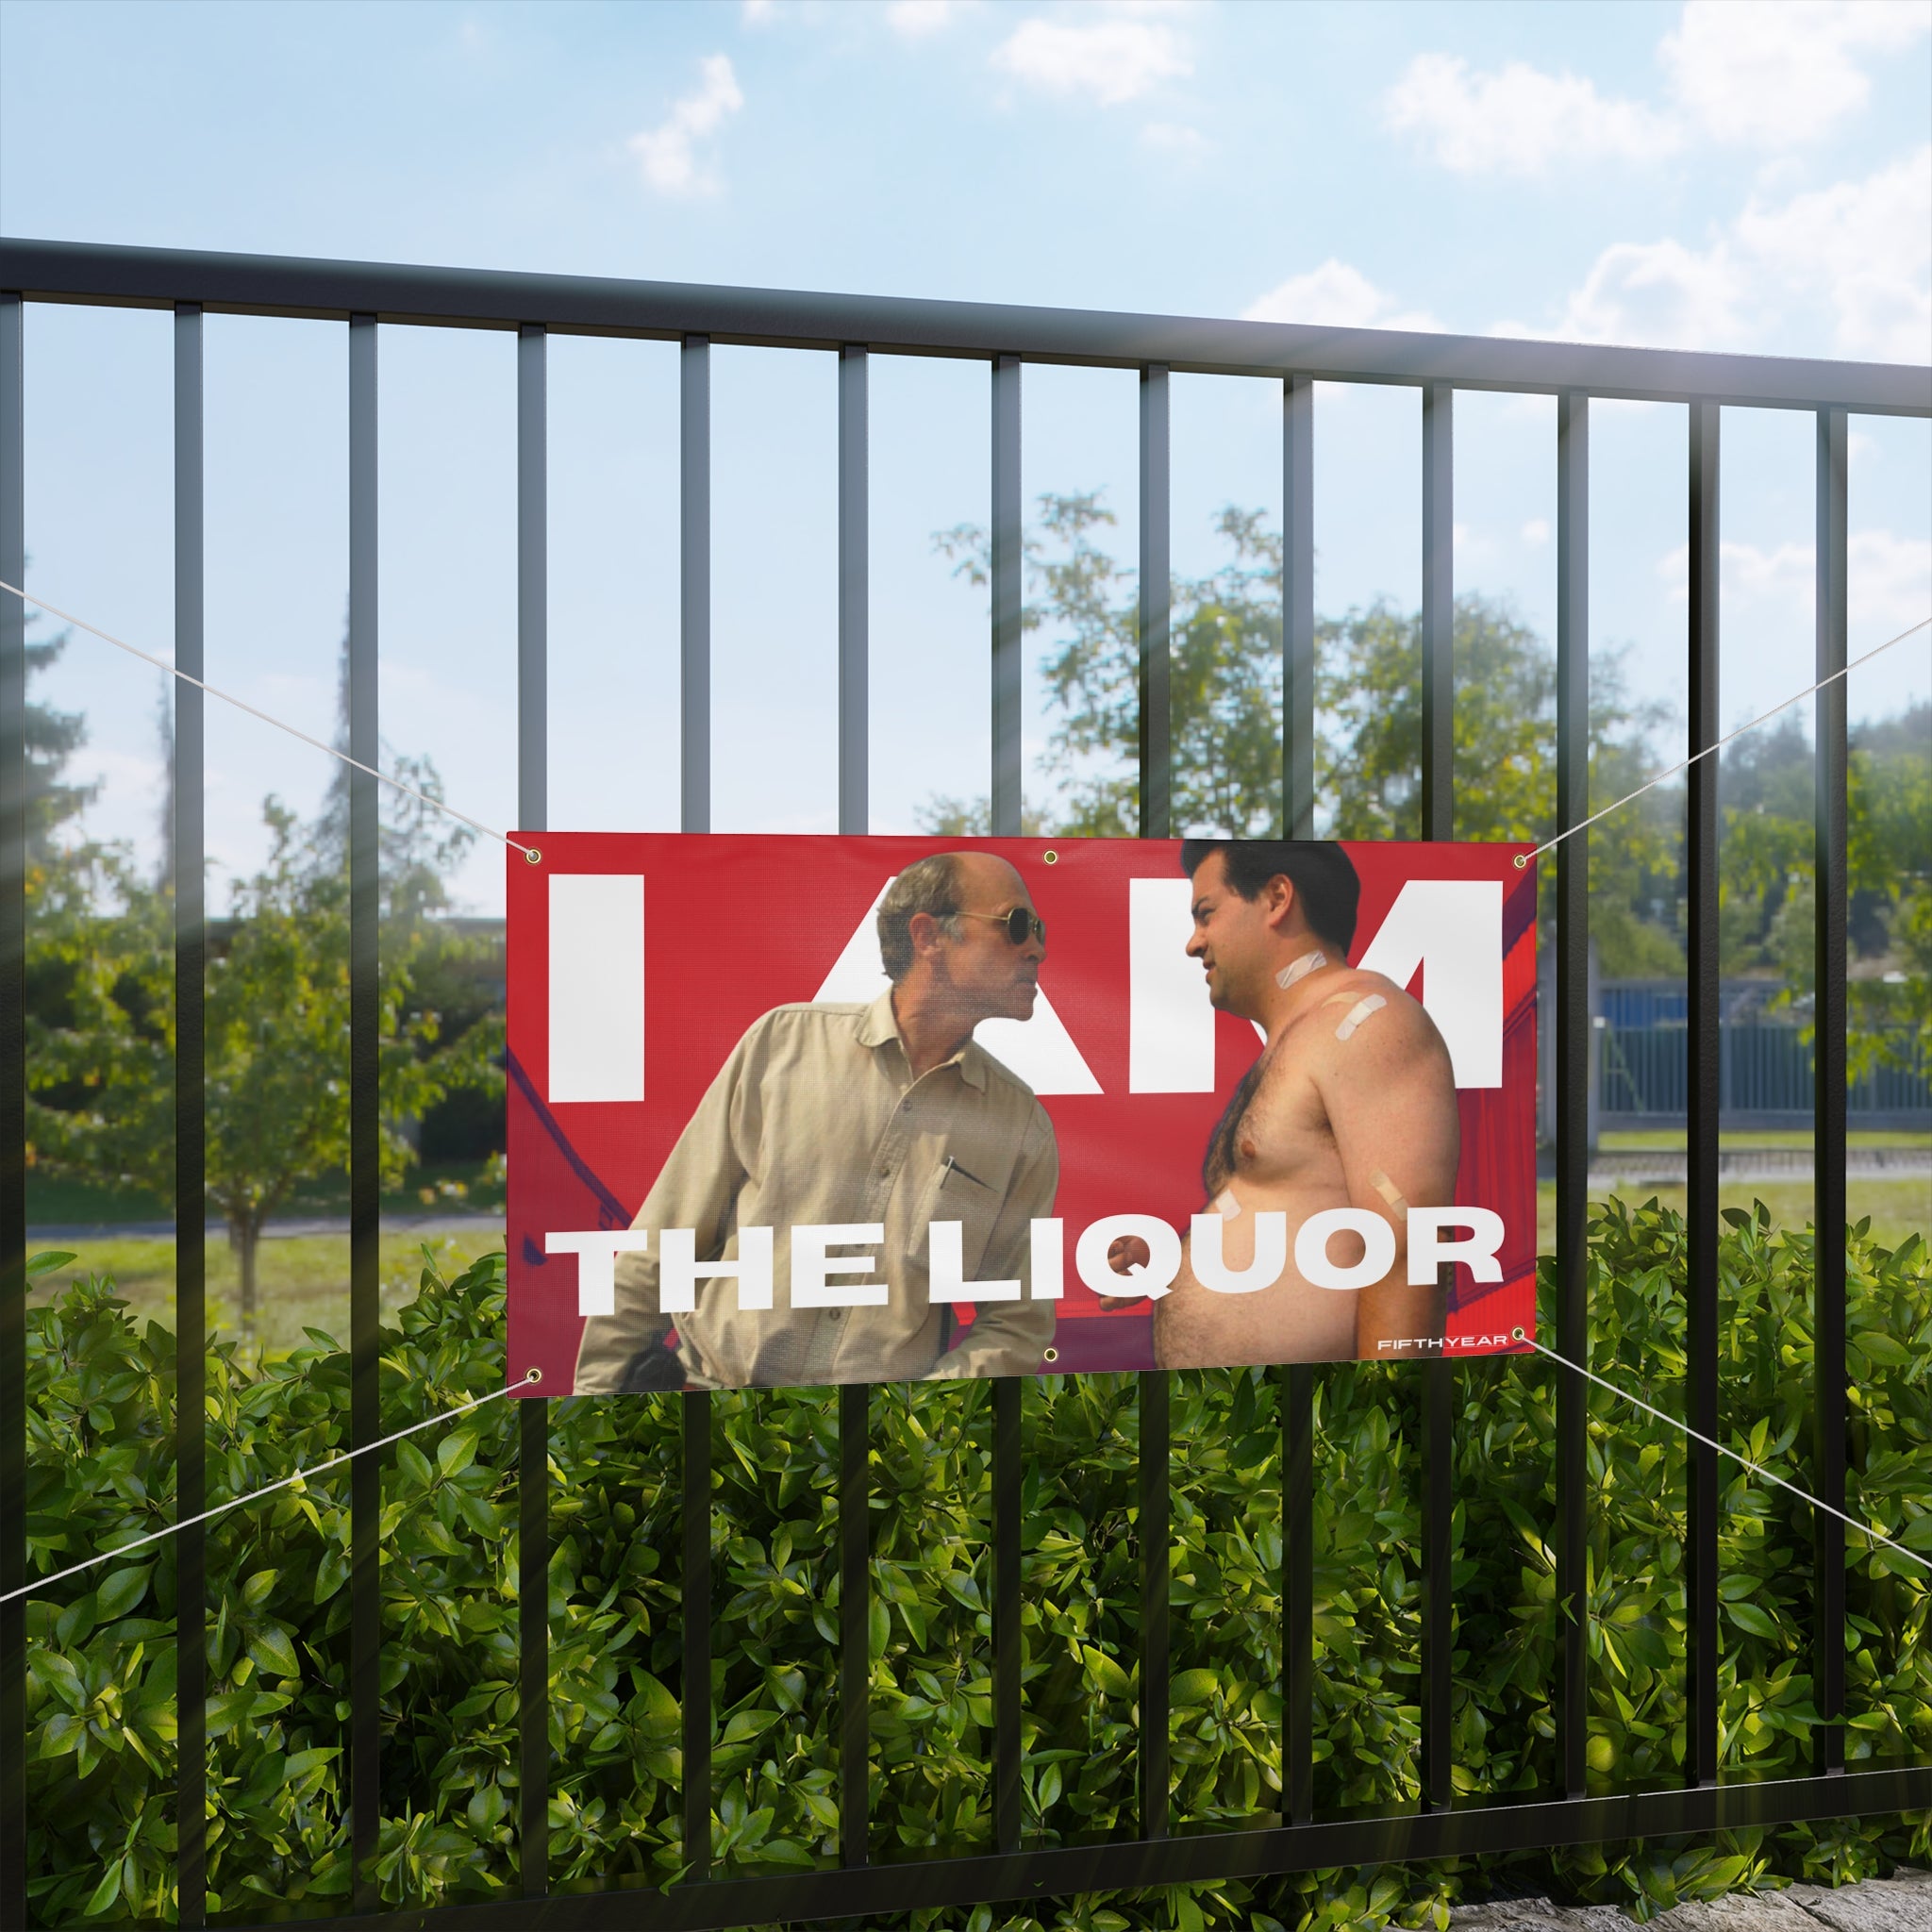 Mr Lahey and Randy Trailer Park Boys "I am the Liquor" - Flag